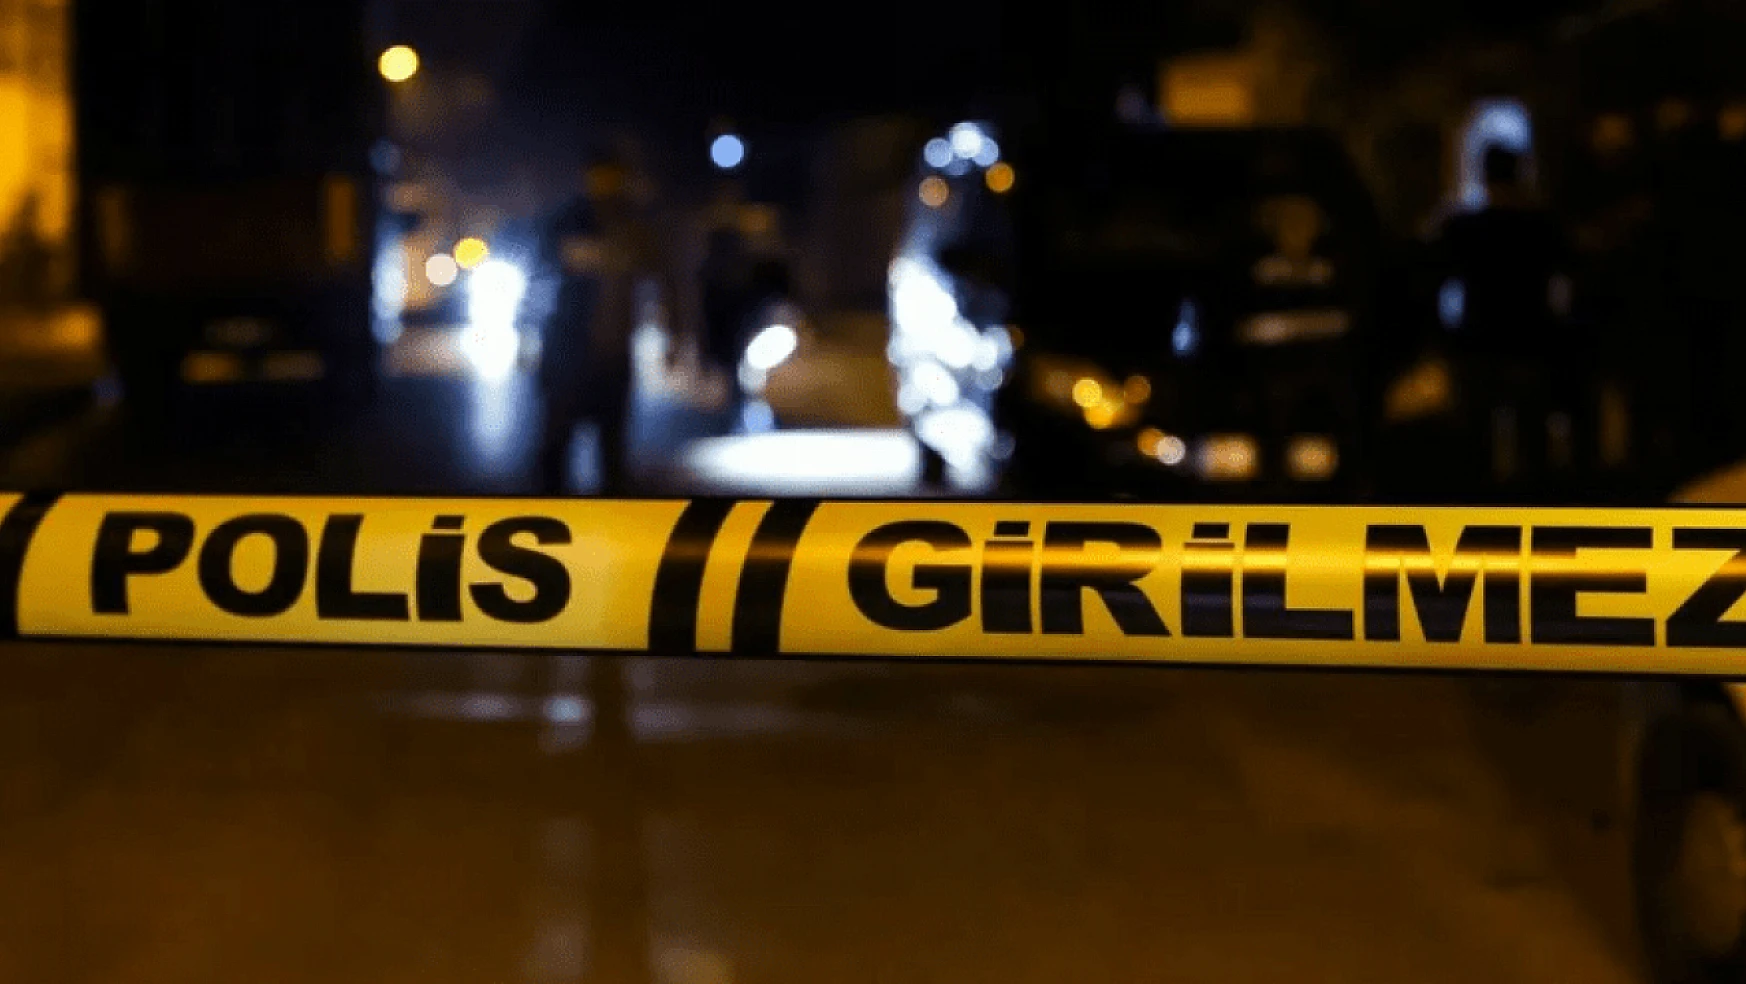 Gaziantep'te damat dehşeti: 4 kişiyi öldürdü, intihar etti